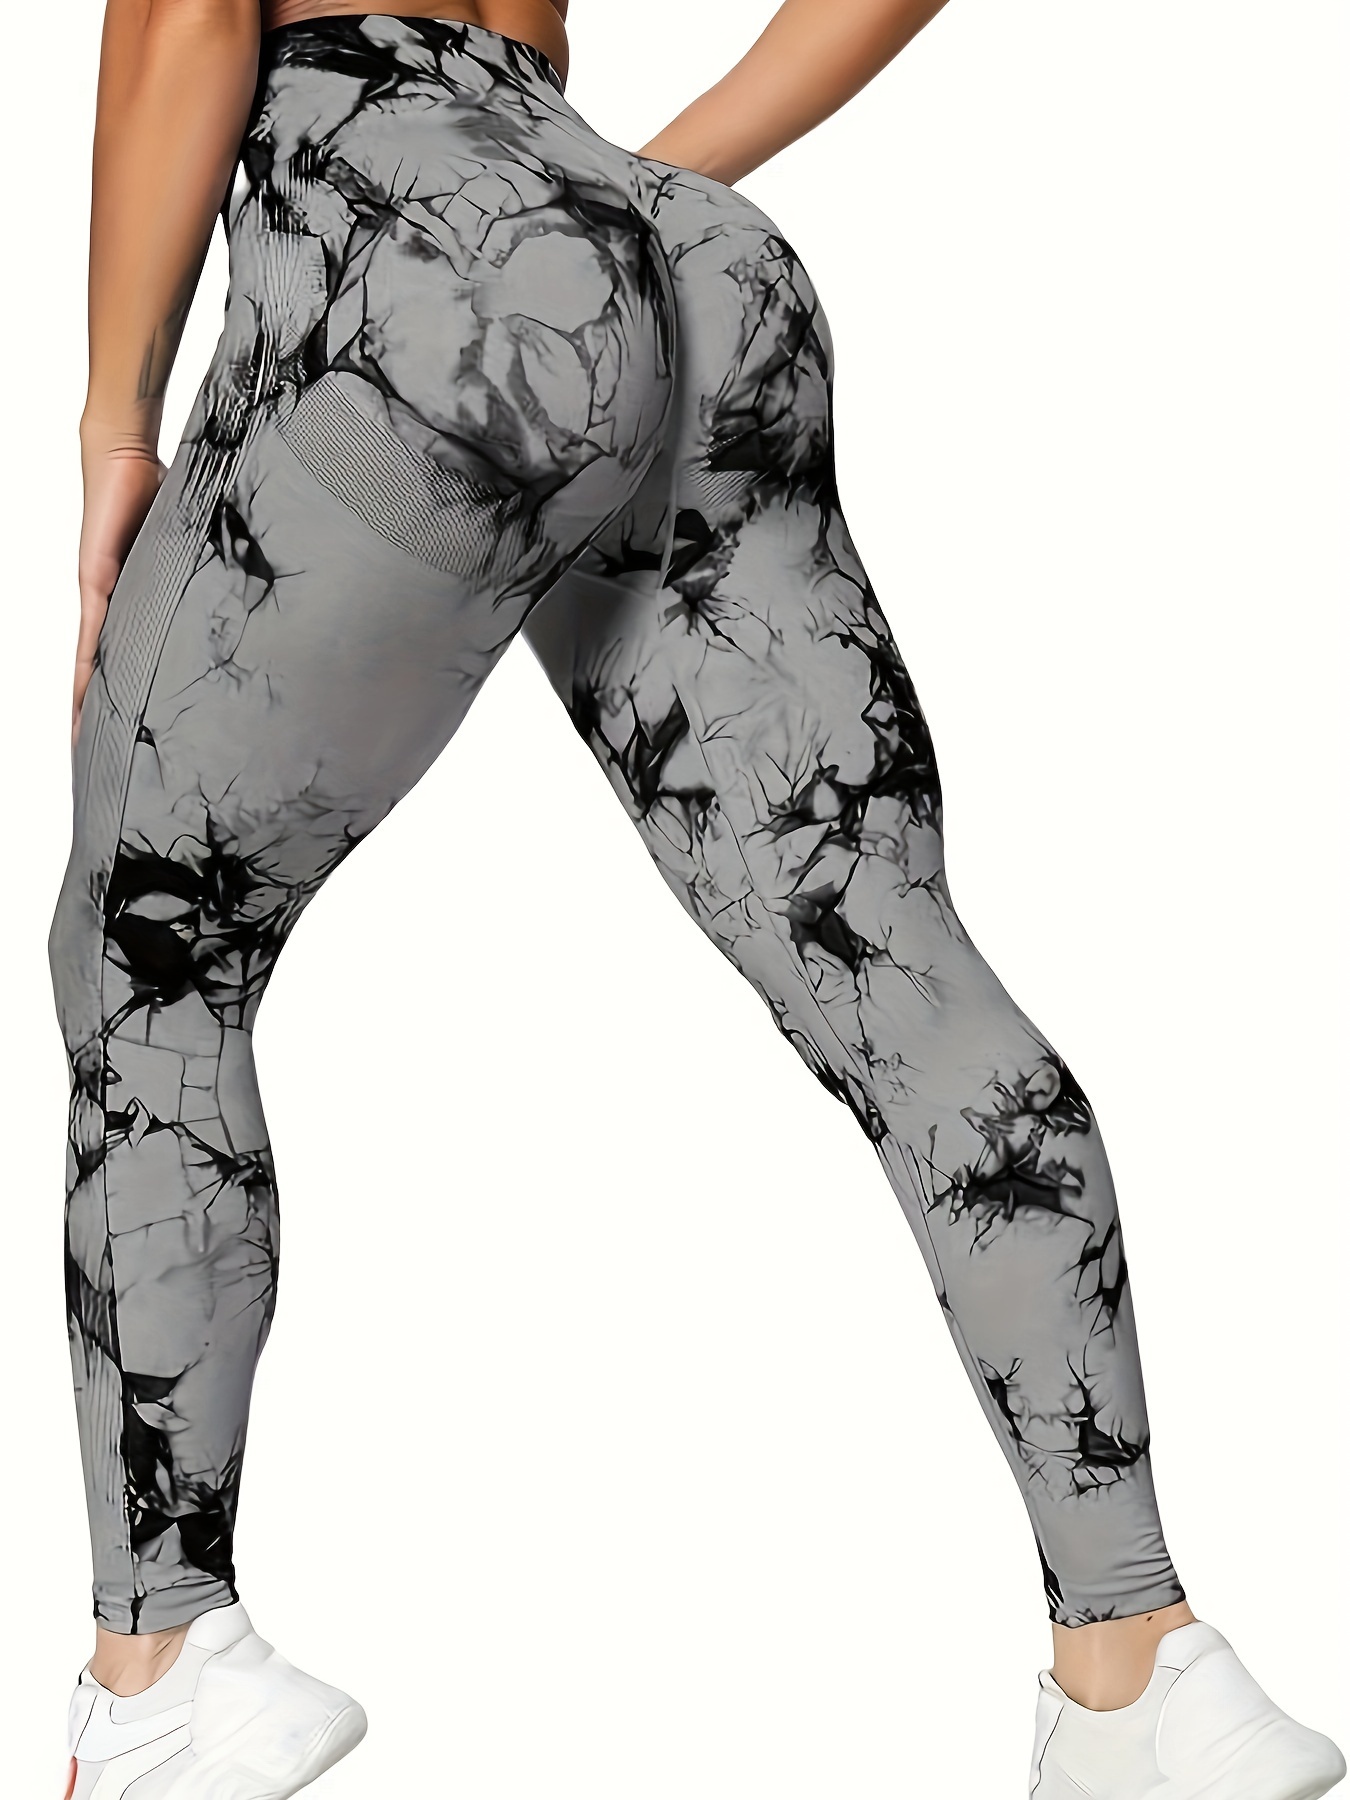 V Back Scrunch Leggings (White) – Fitness Fashioness